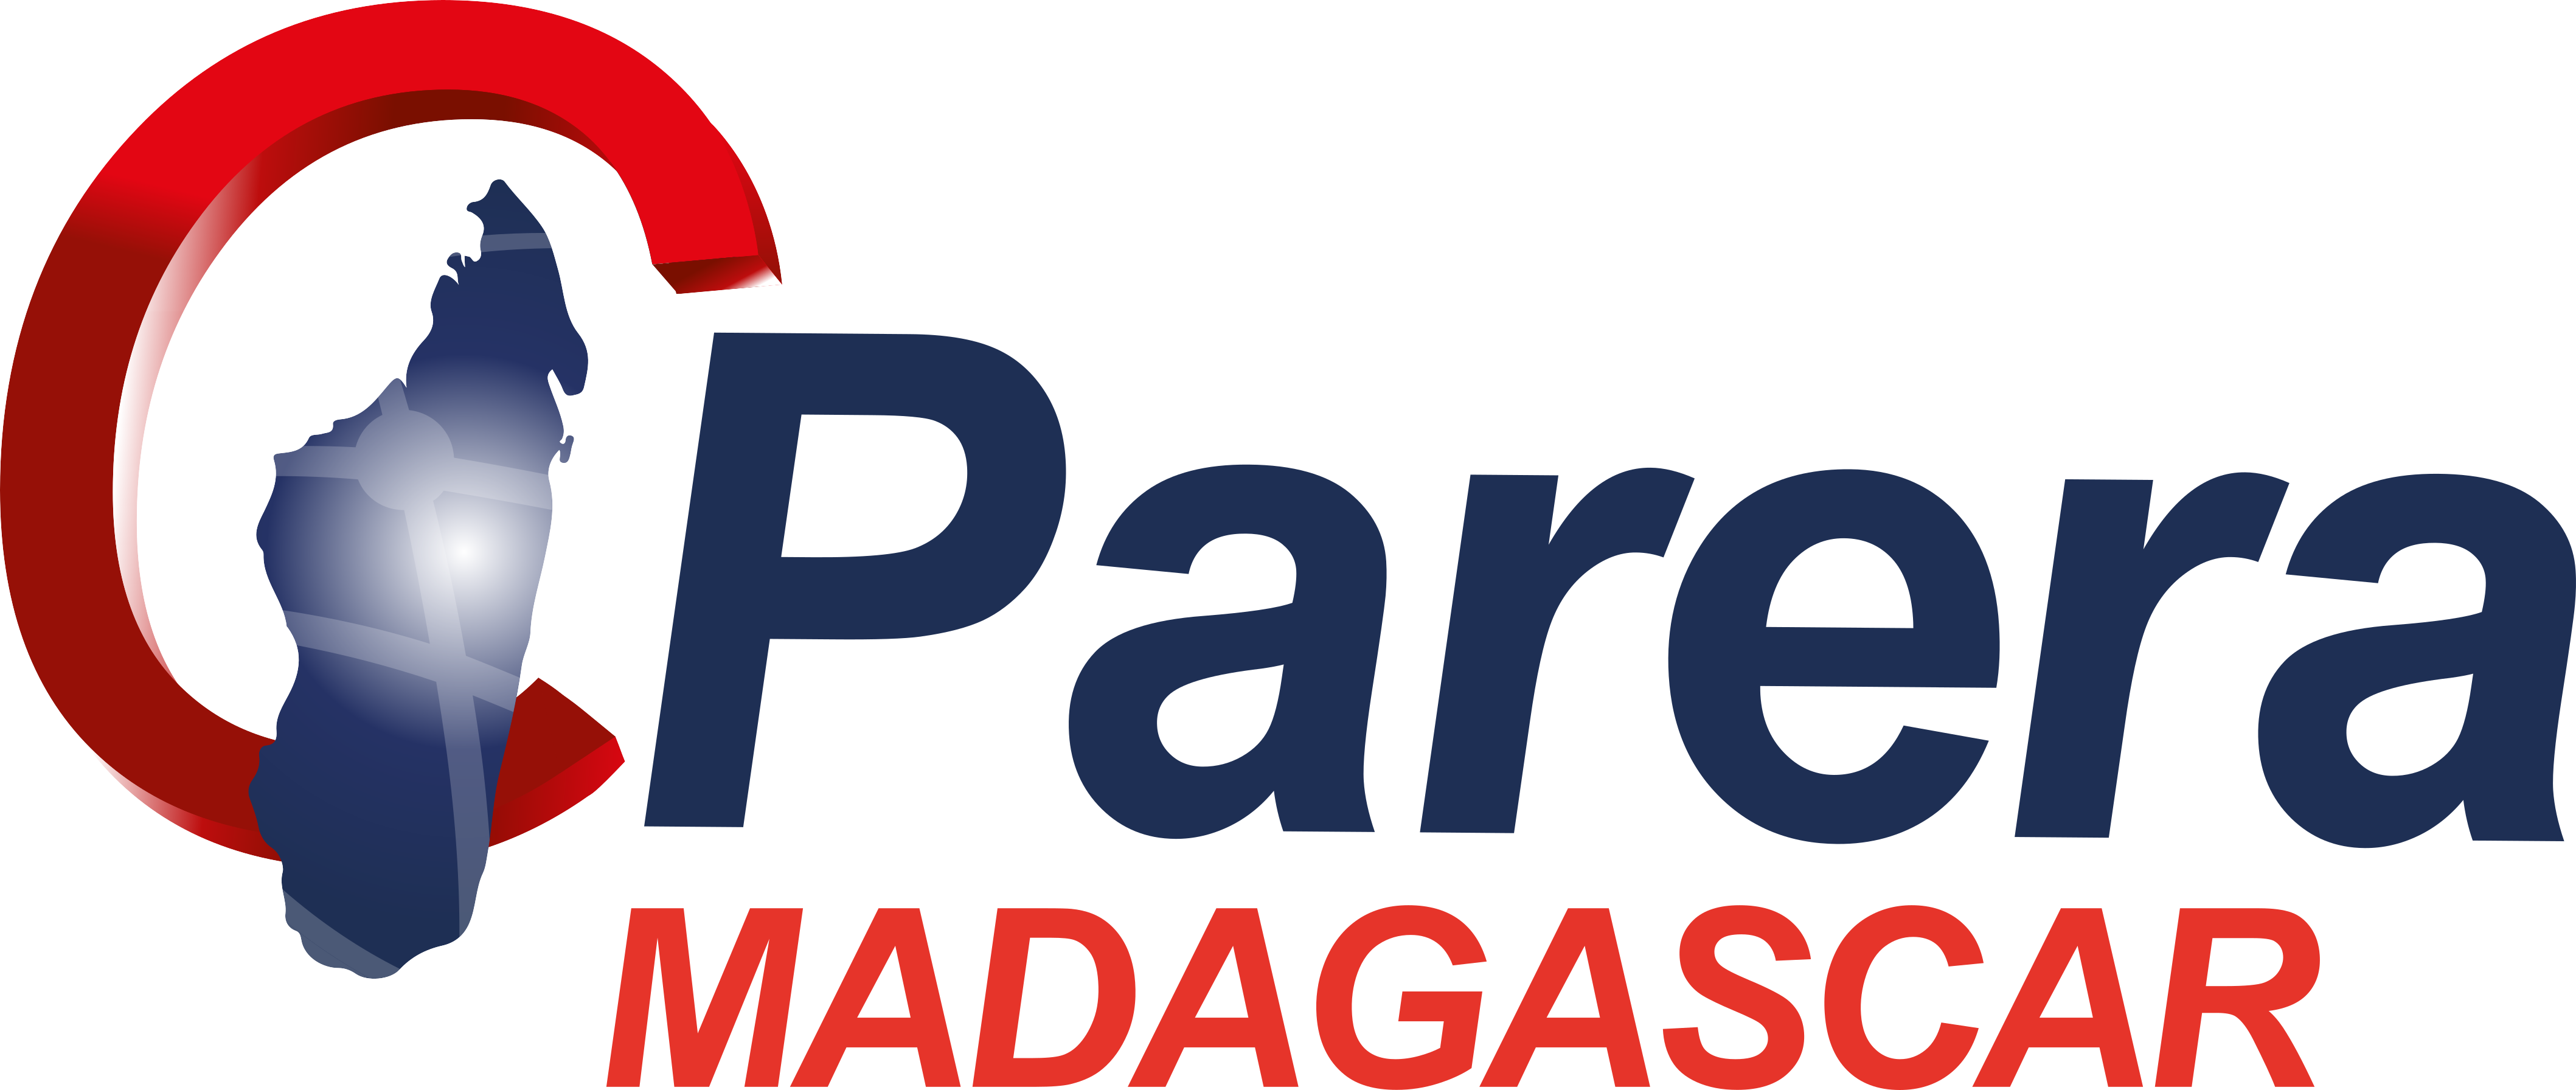 PARERA Madagascar